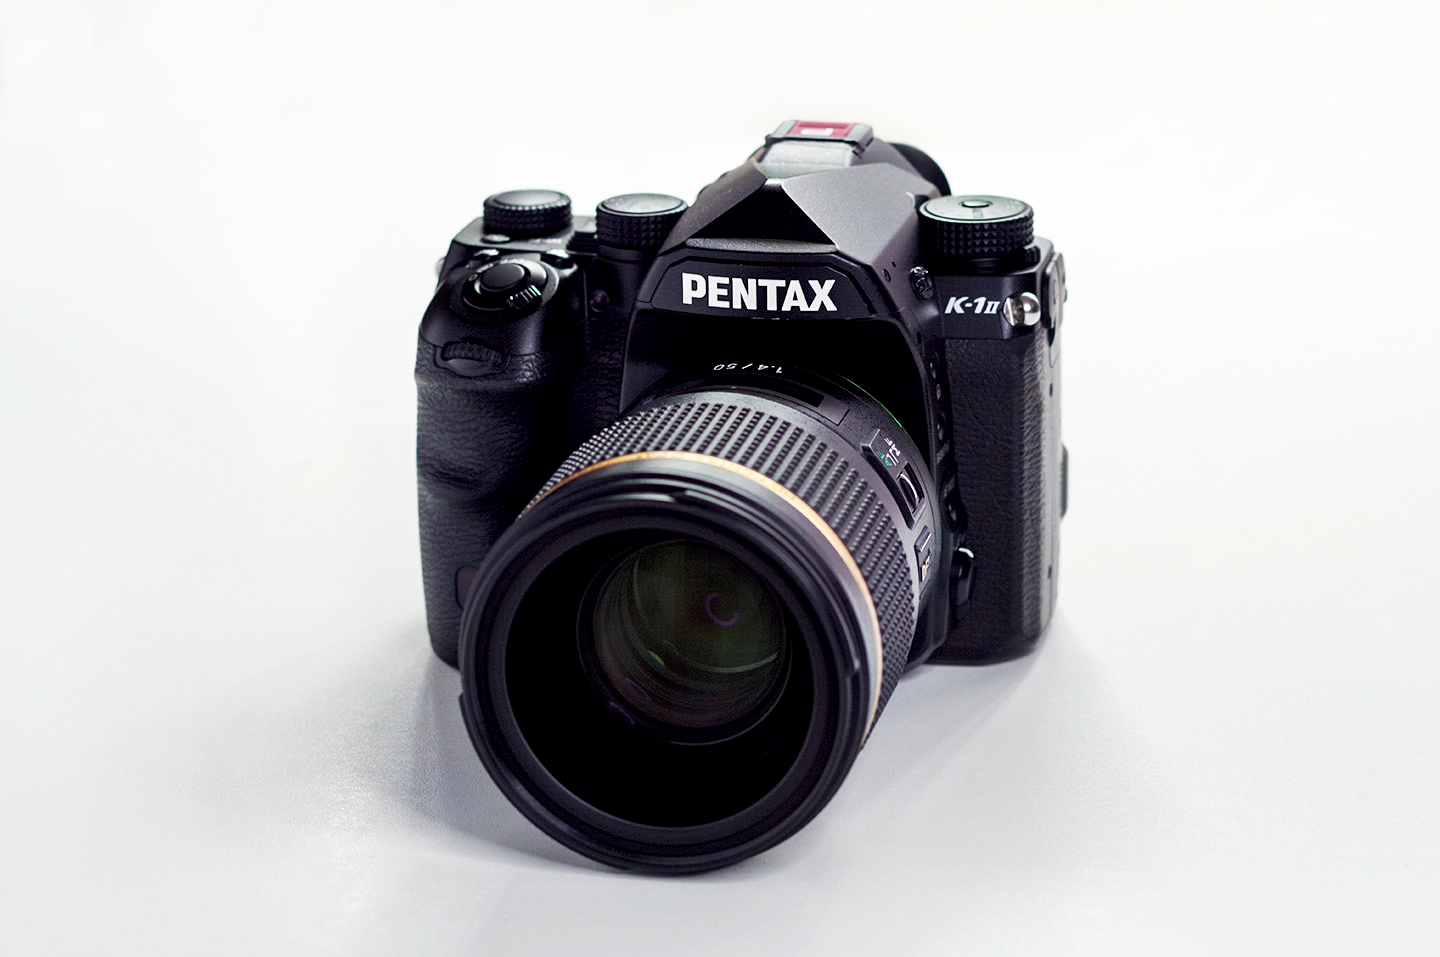 HD PENTAX-D FA★50mmF1.4 SDM AW 大口径単焦点レンズ 21260 - 5